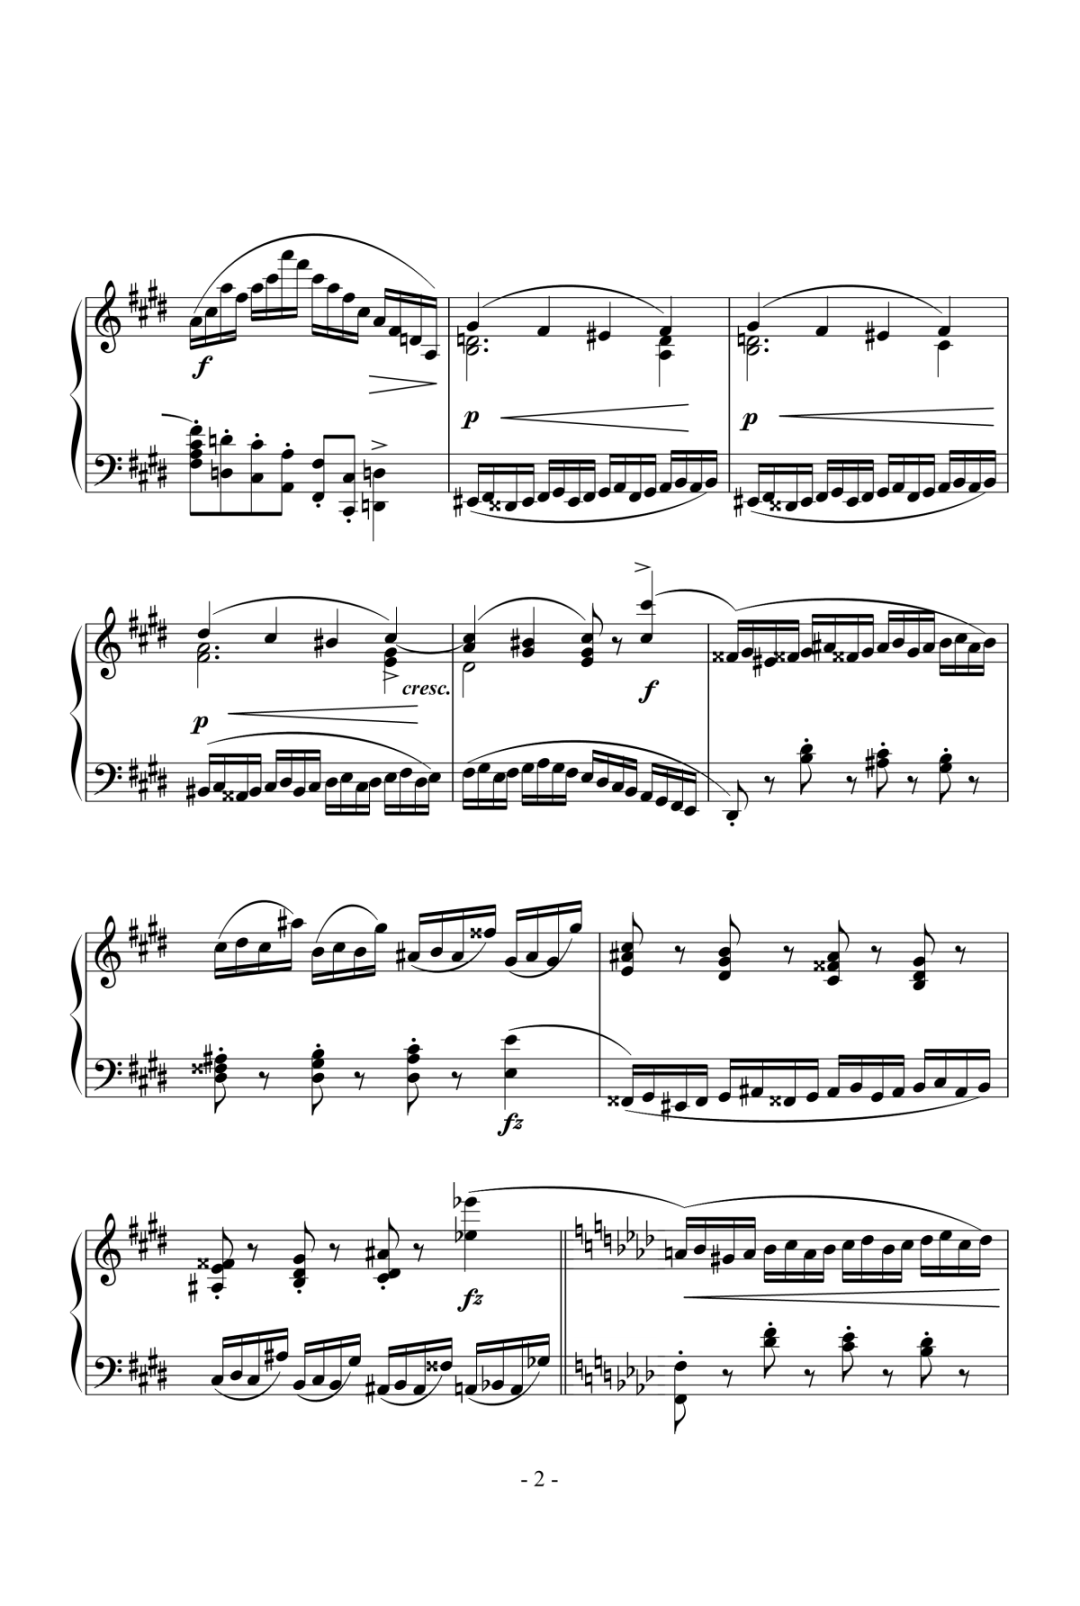 钢琴块 2 等级歌曲】47 激流练习曲,钢琴谱》肖邦（五线谱 钢琴曲 指法）-弹吧|蛐蛐钢琴网